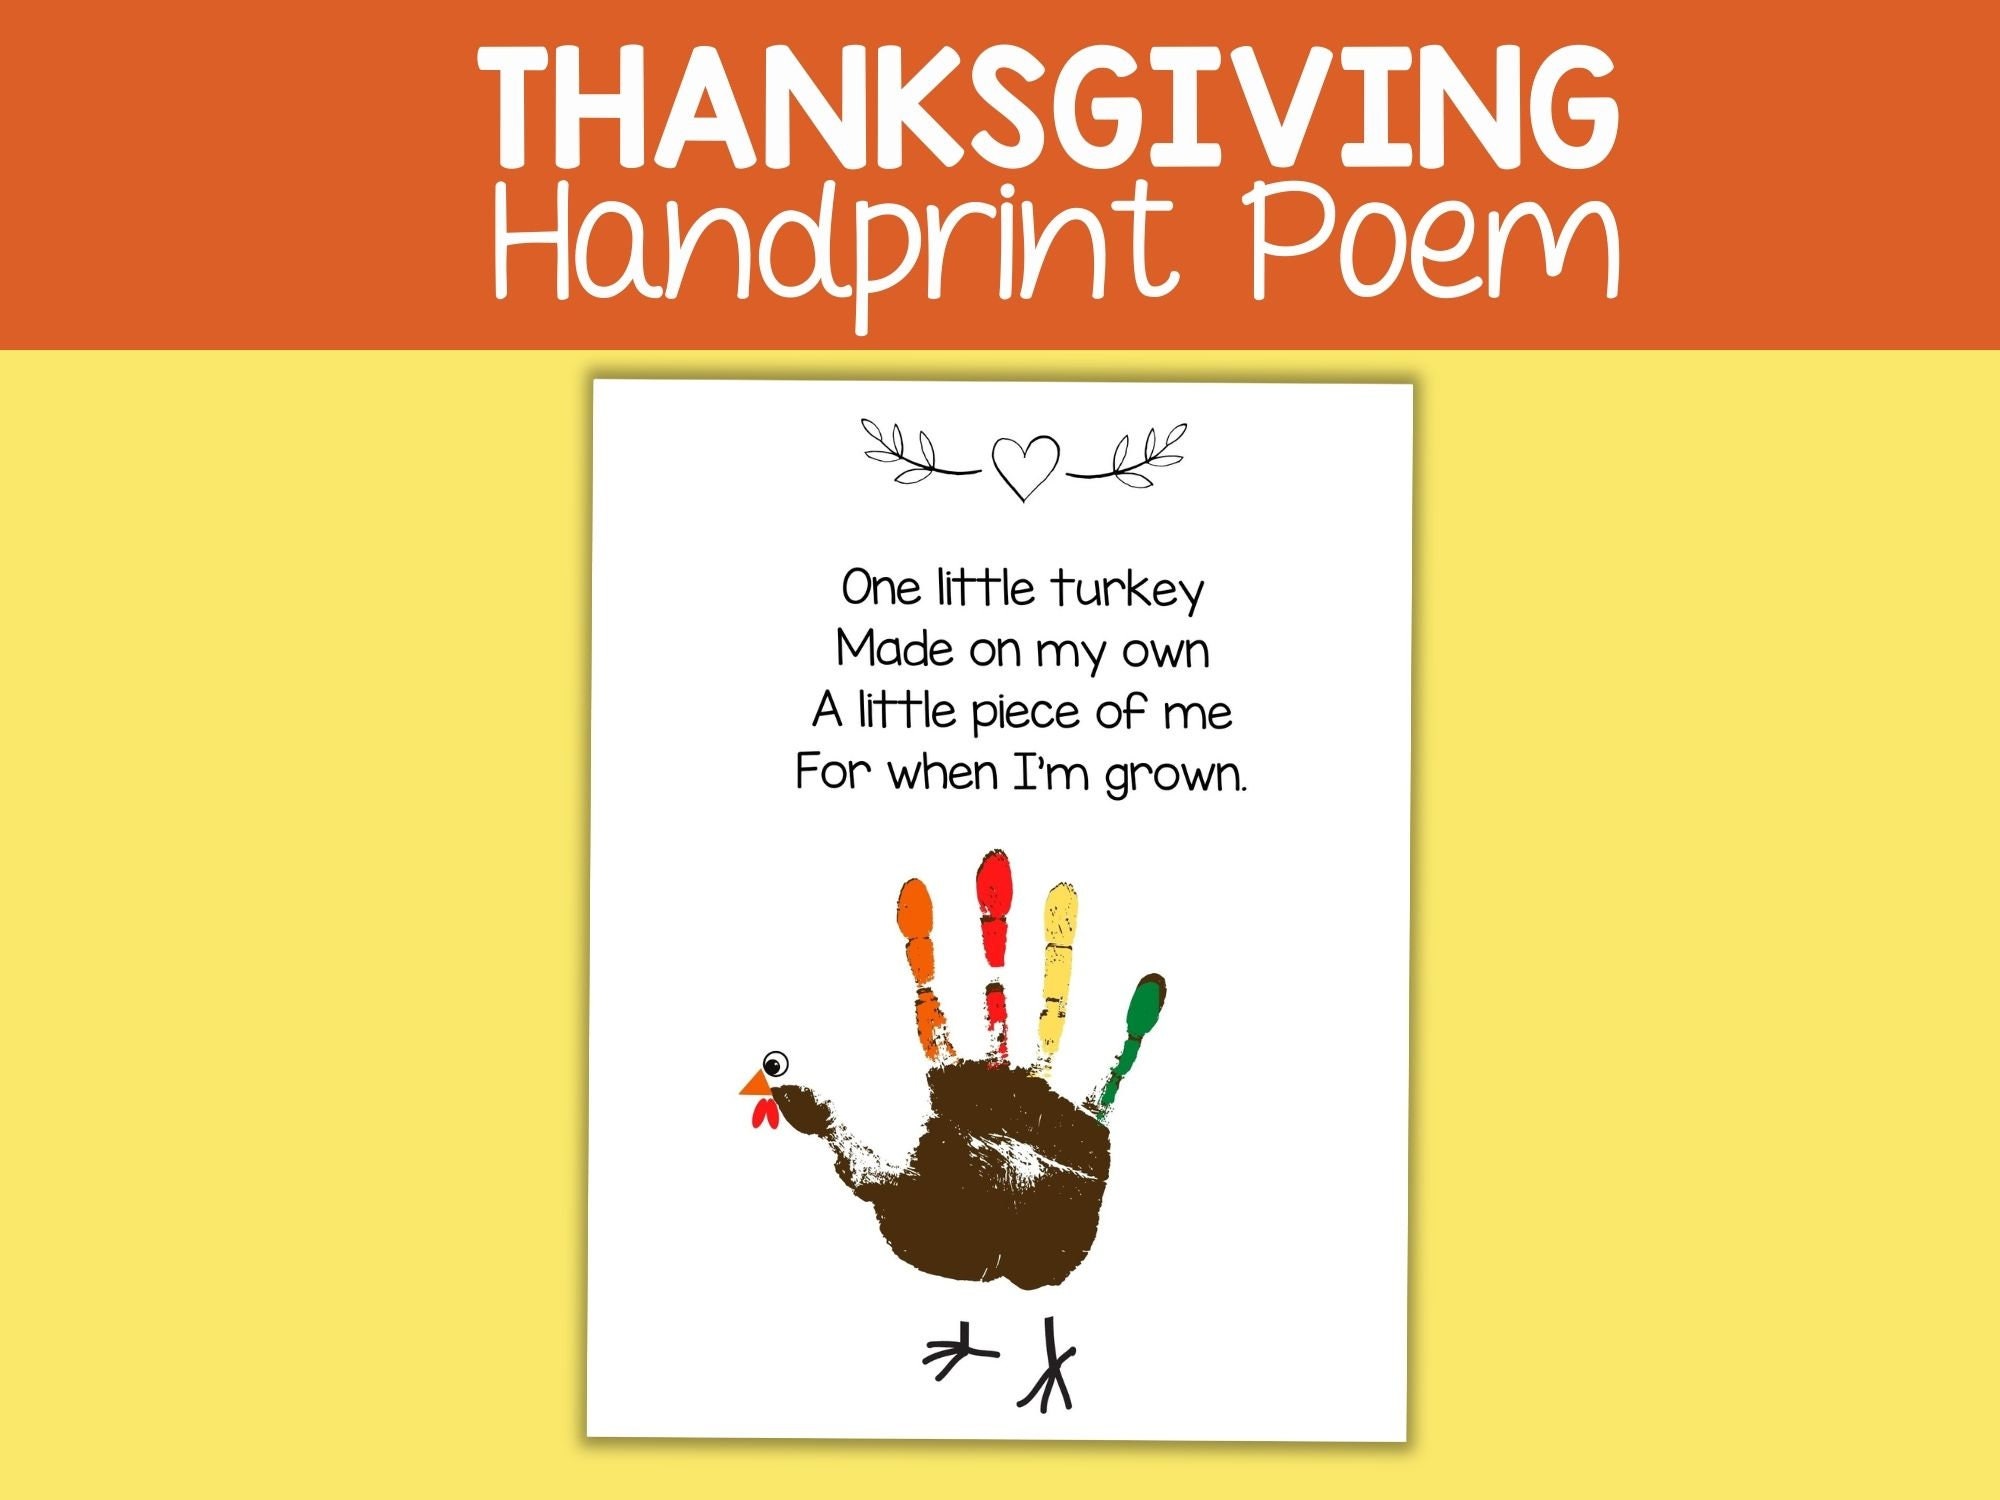 turkey-handprint-poem-ubicaciondepersonas-cdmx-gob-mx